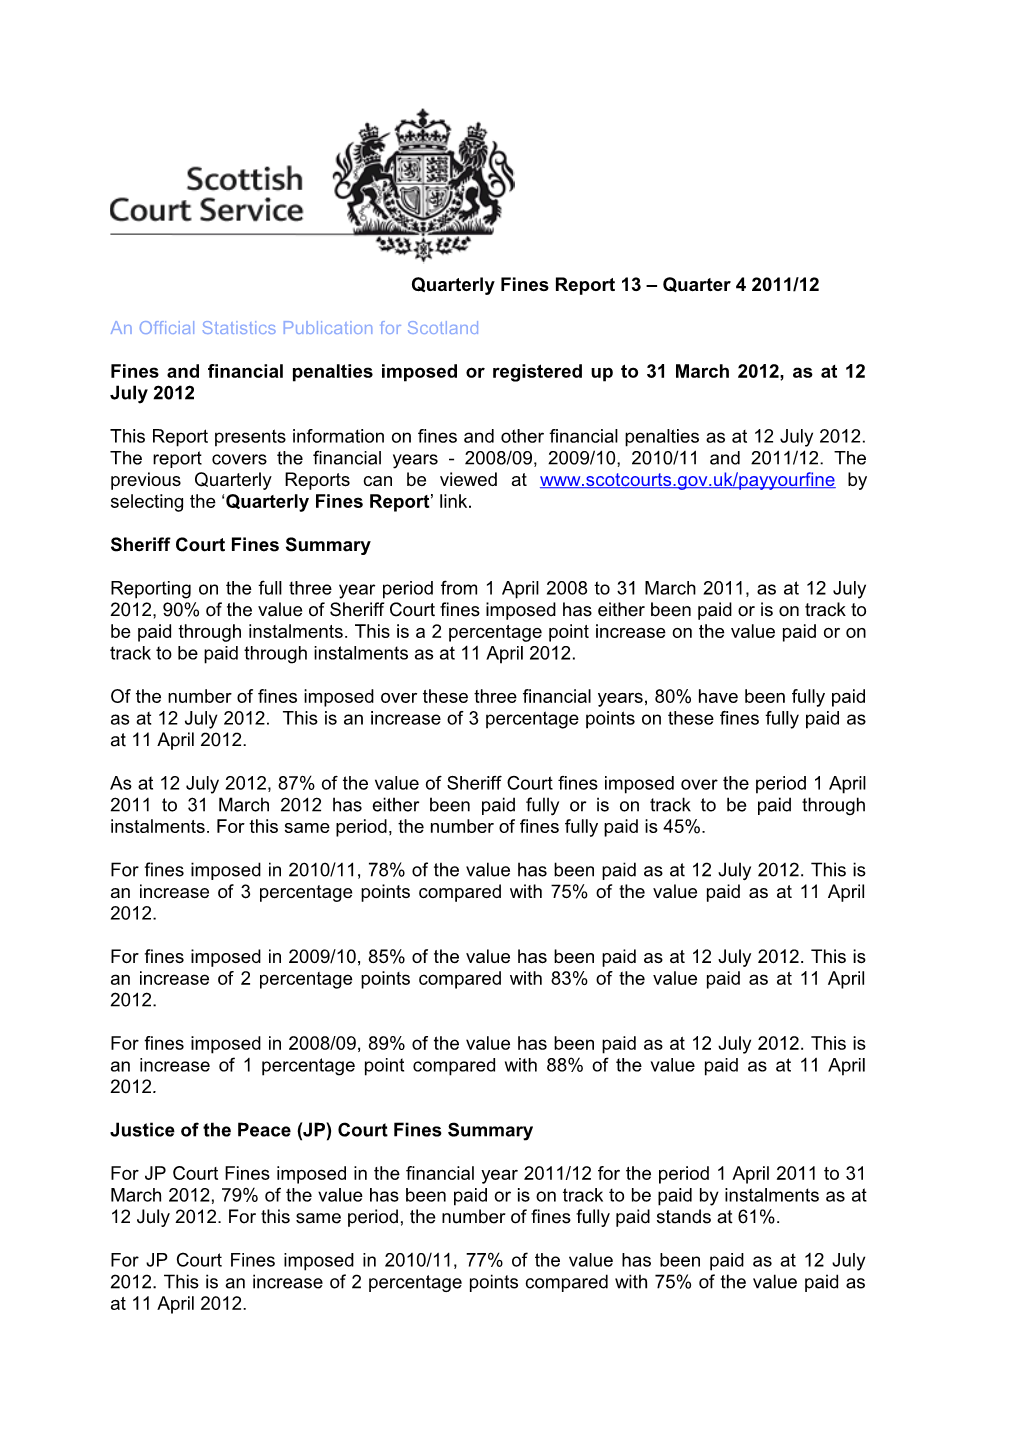 Quarterly Fines Report 13 Quarter 4 2011/12